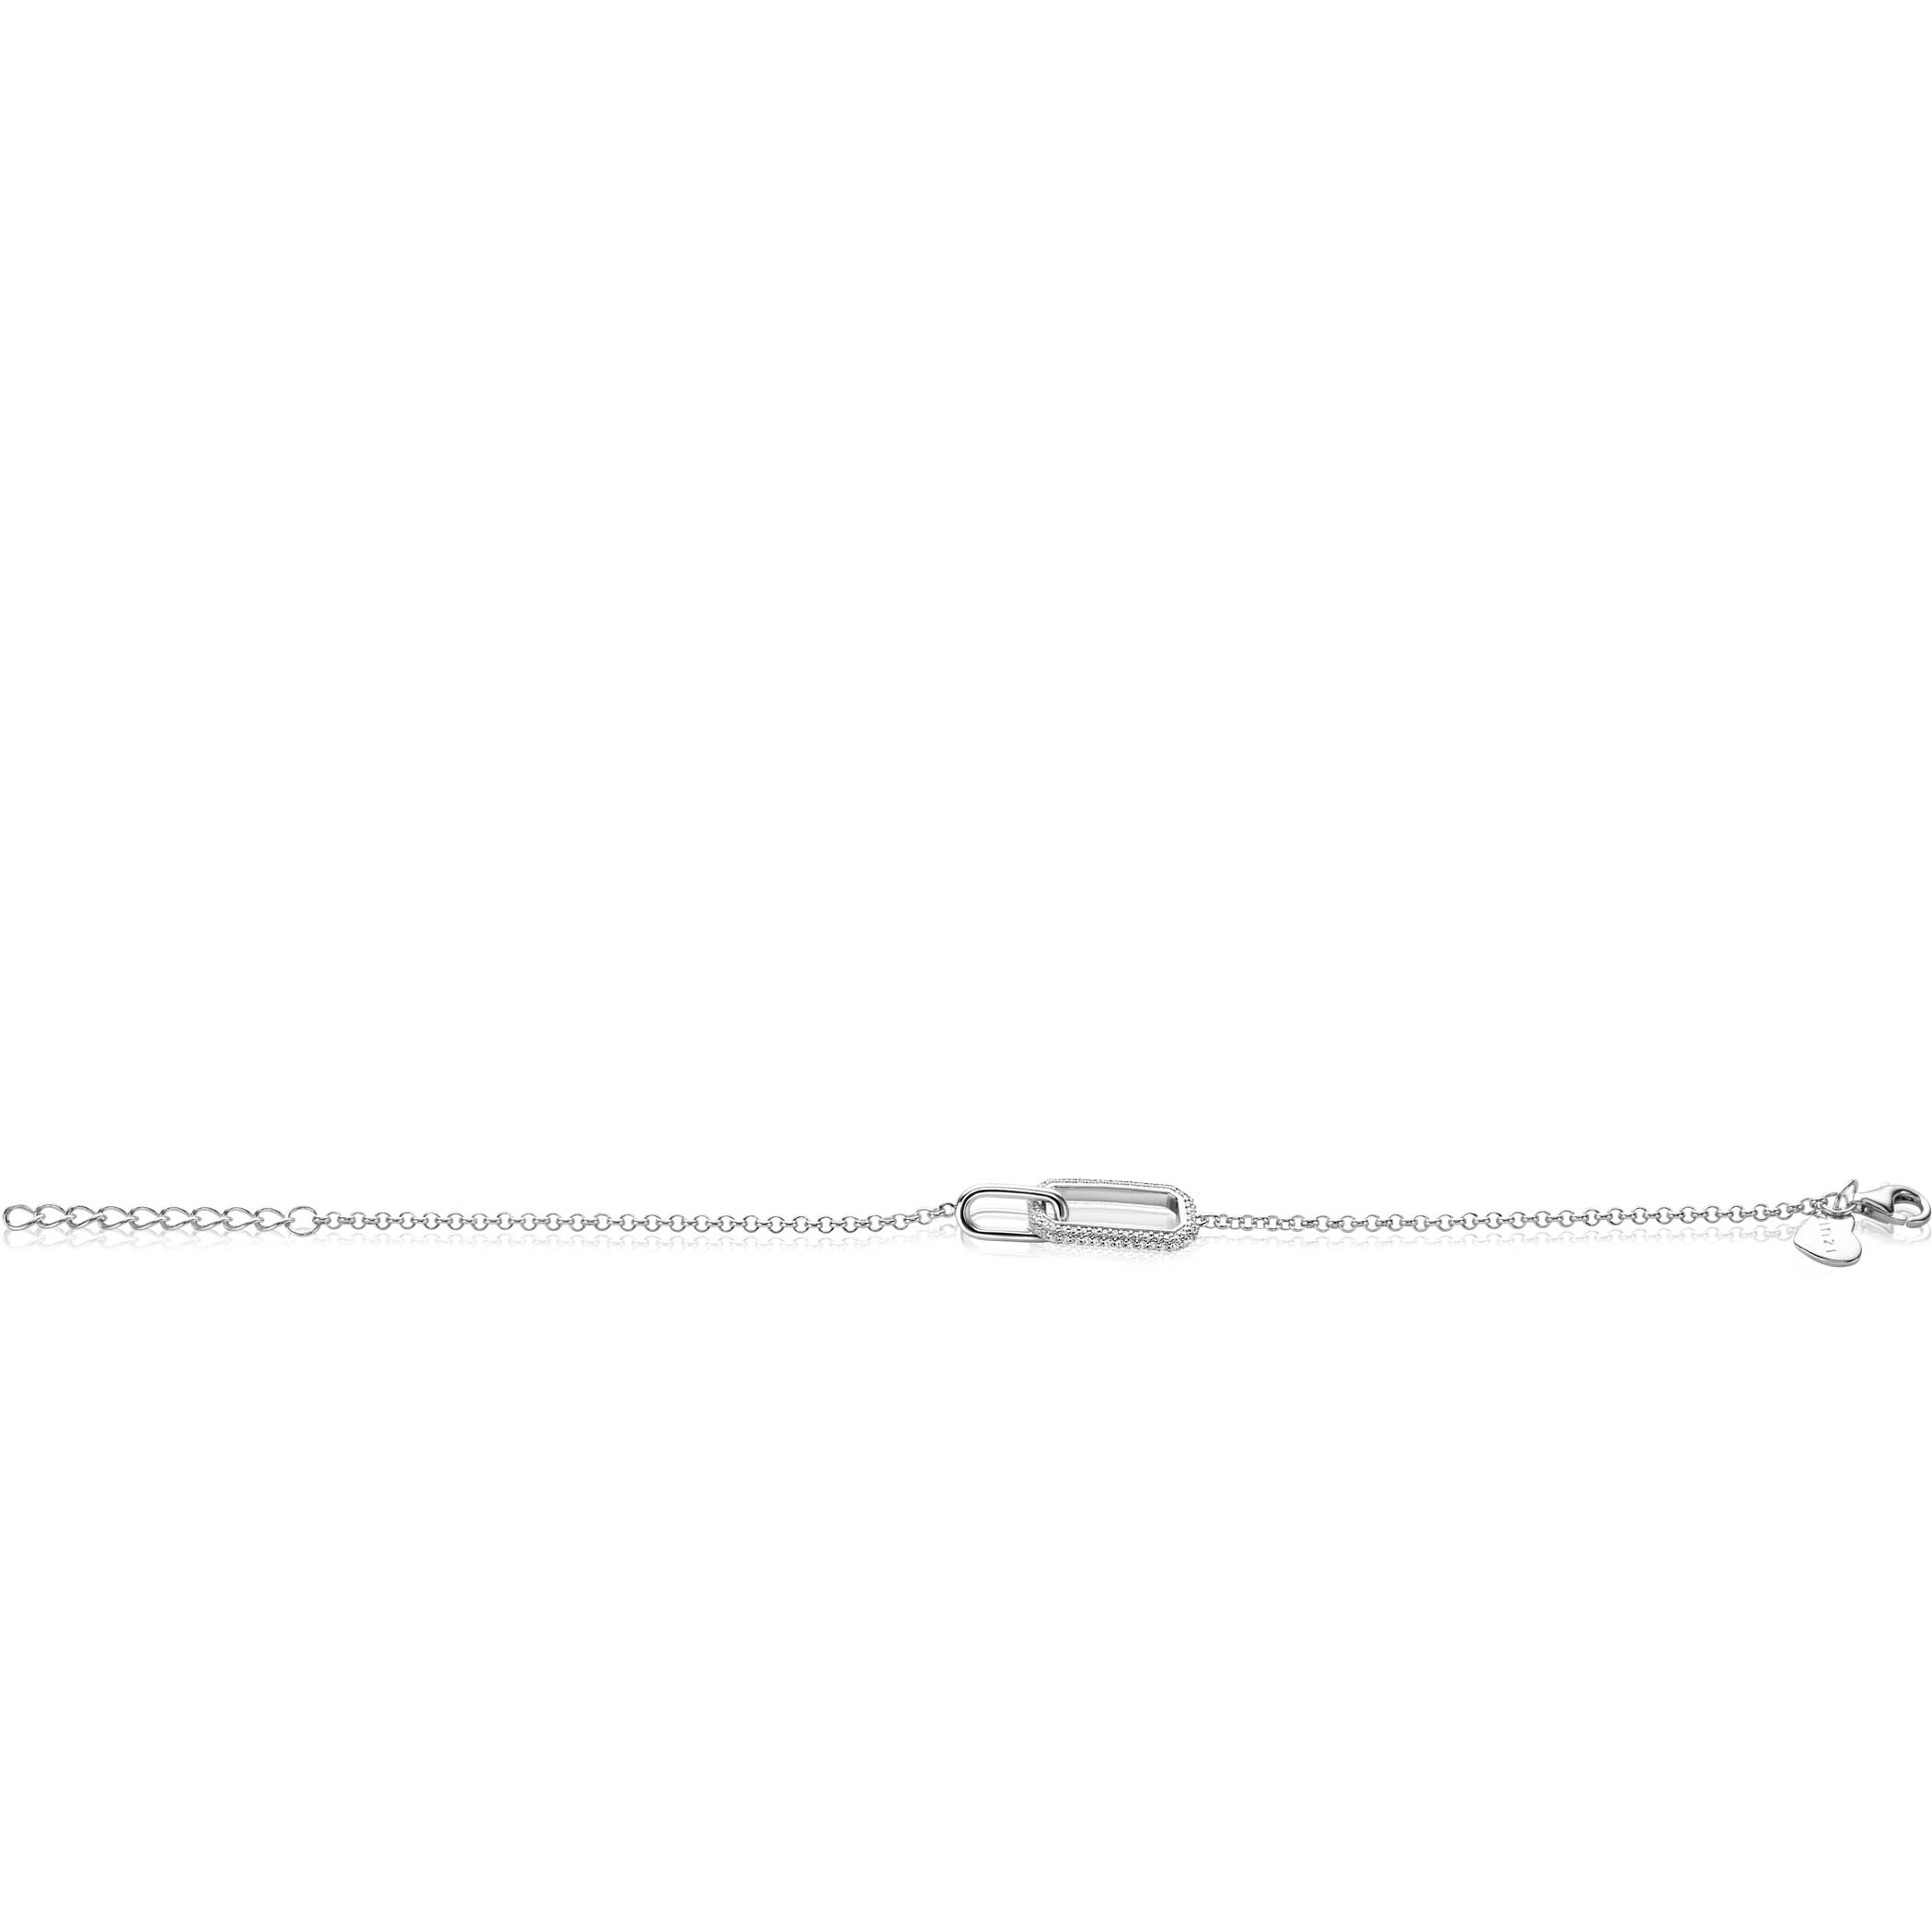 ZINZI zilveren armband met twee verbonden schakels: een rechthoekige bezet met witte zirconia's en een gladde ovale schakel 16,5-19,5cm ZIA2551